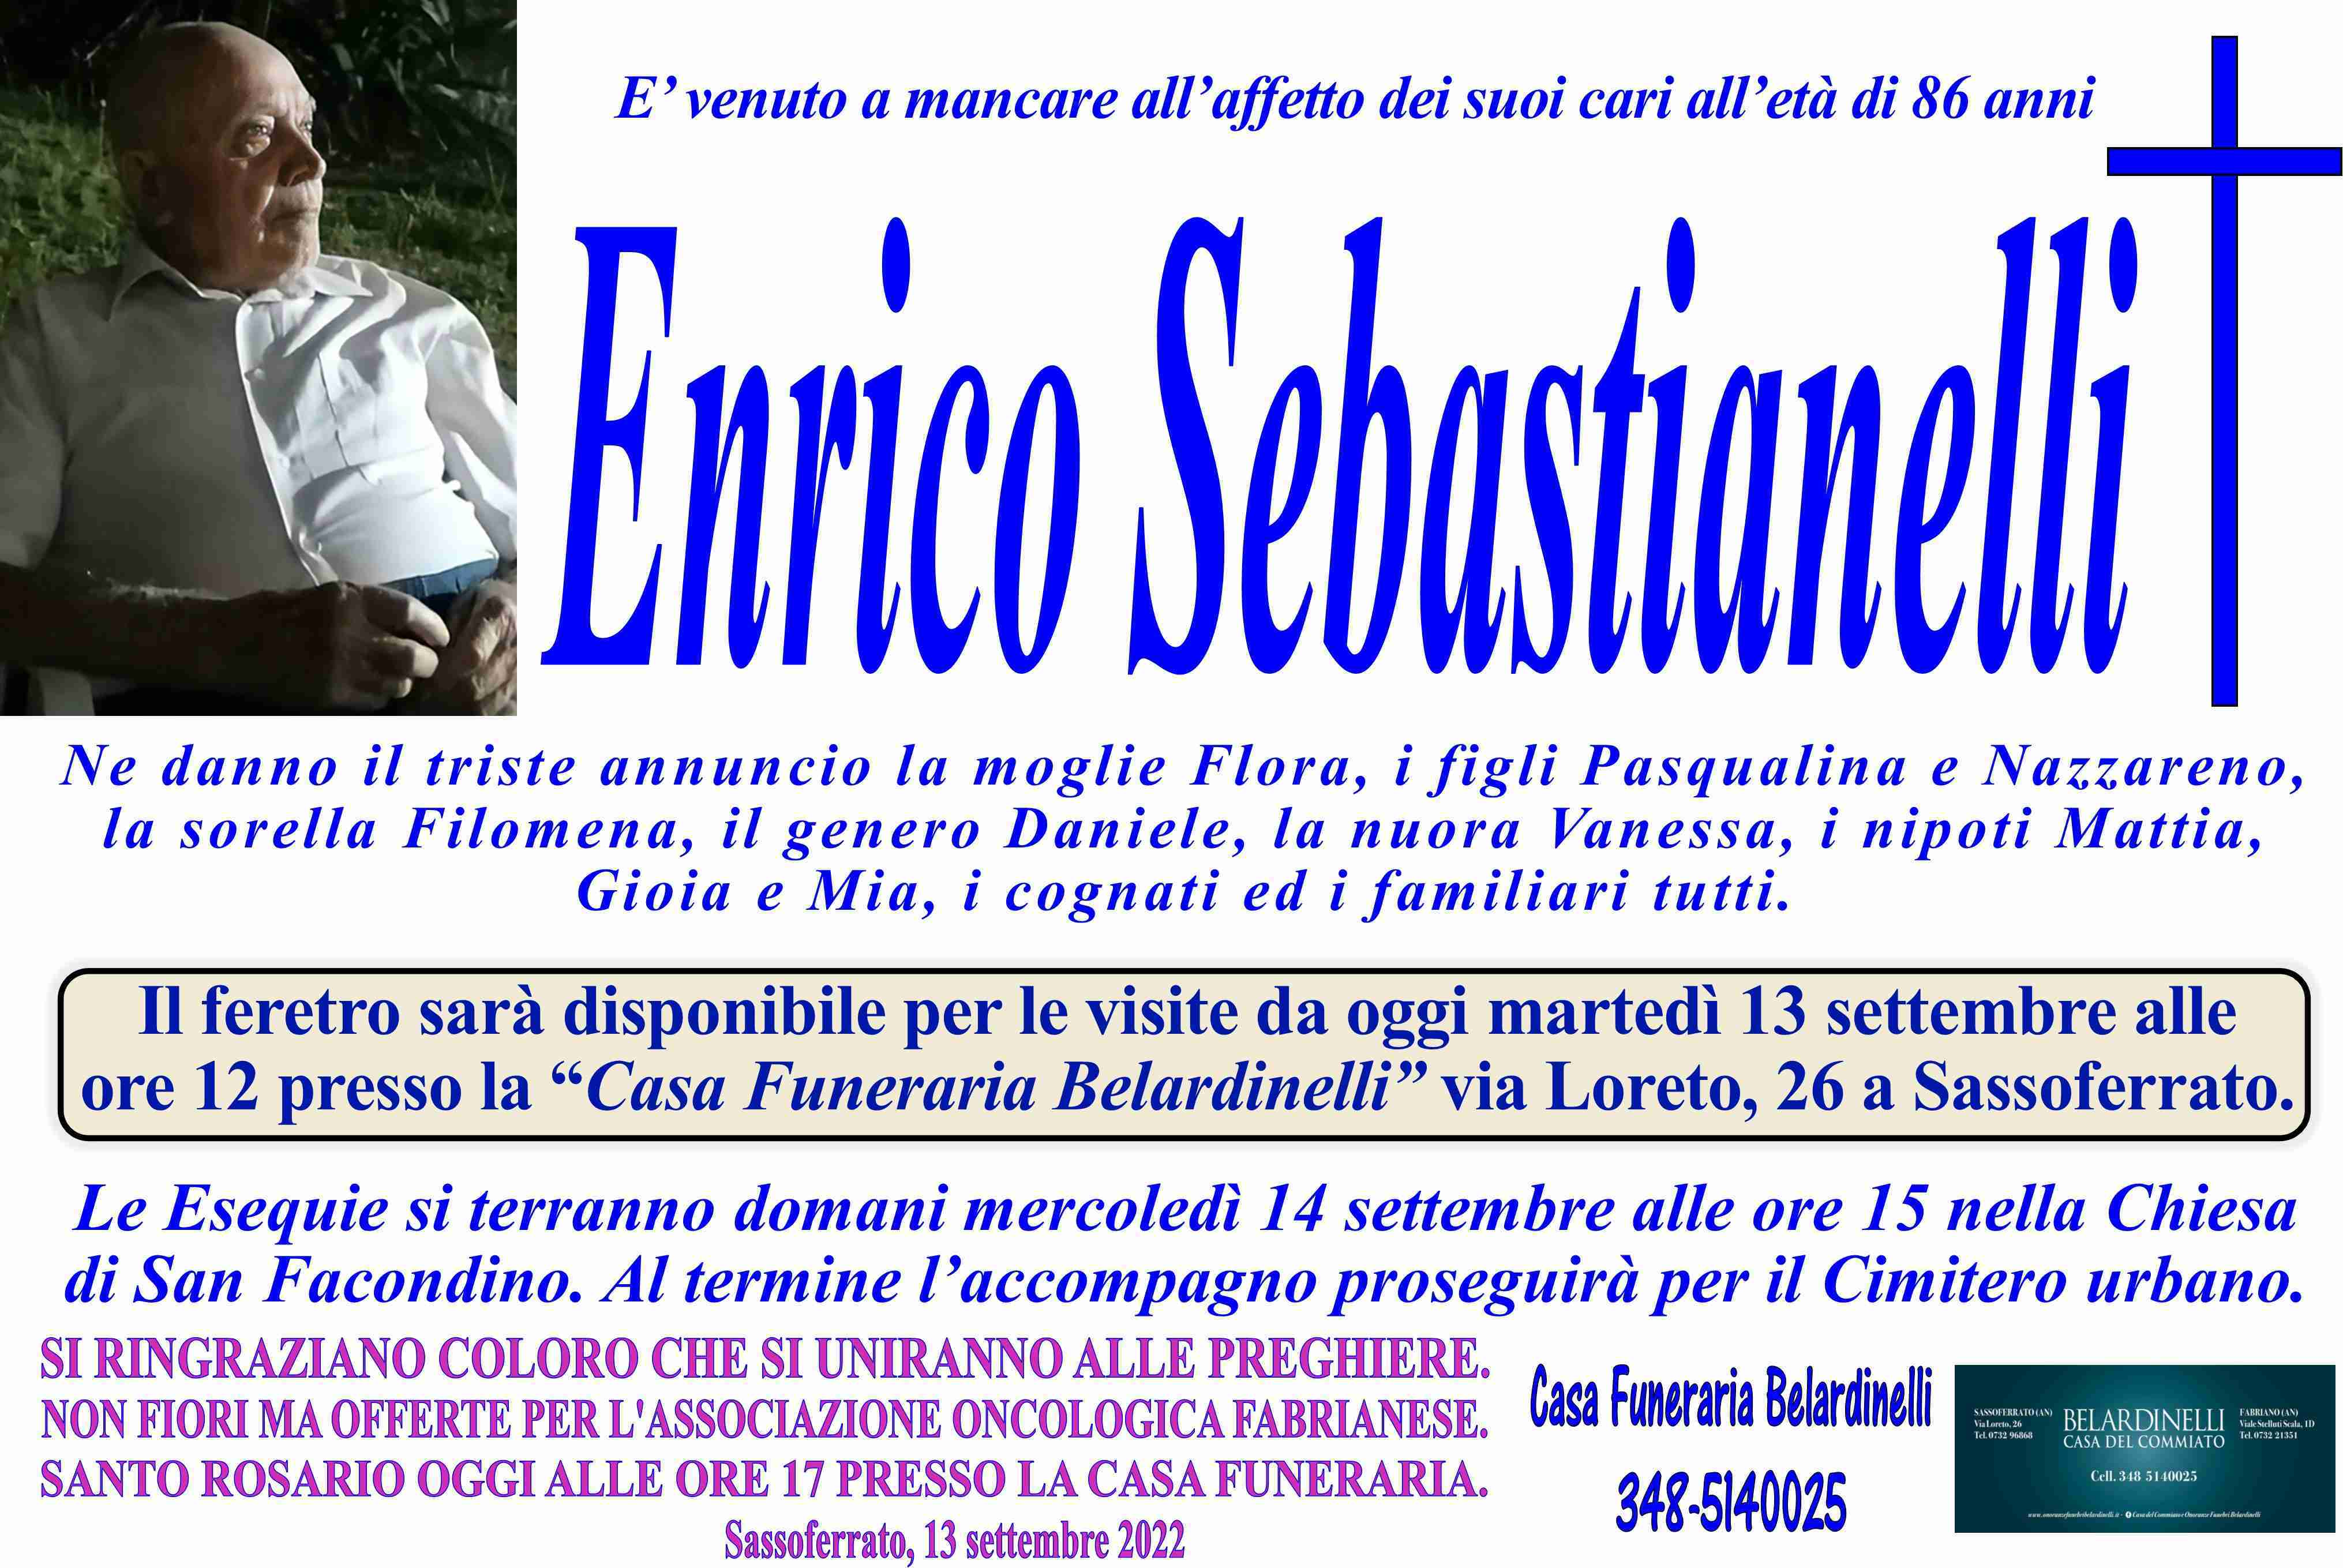 Enrico Sebastianelli